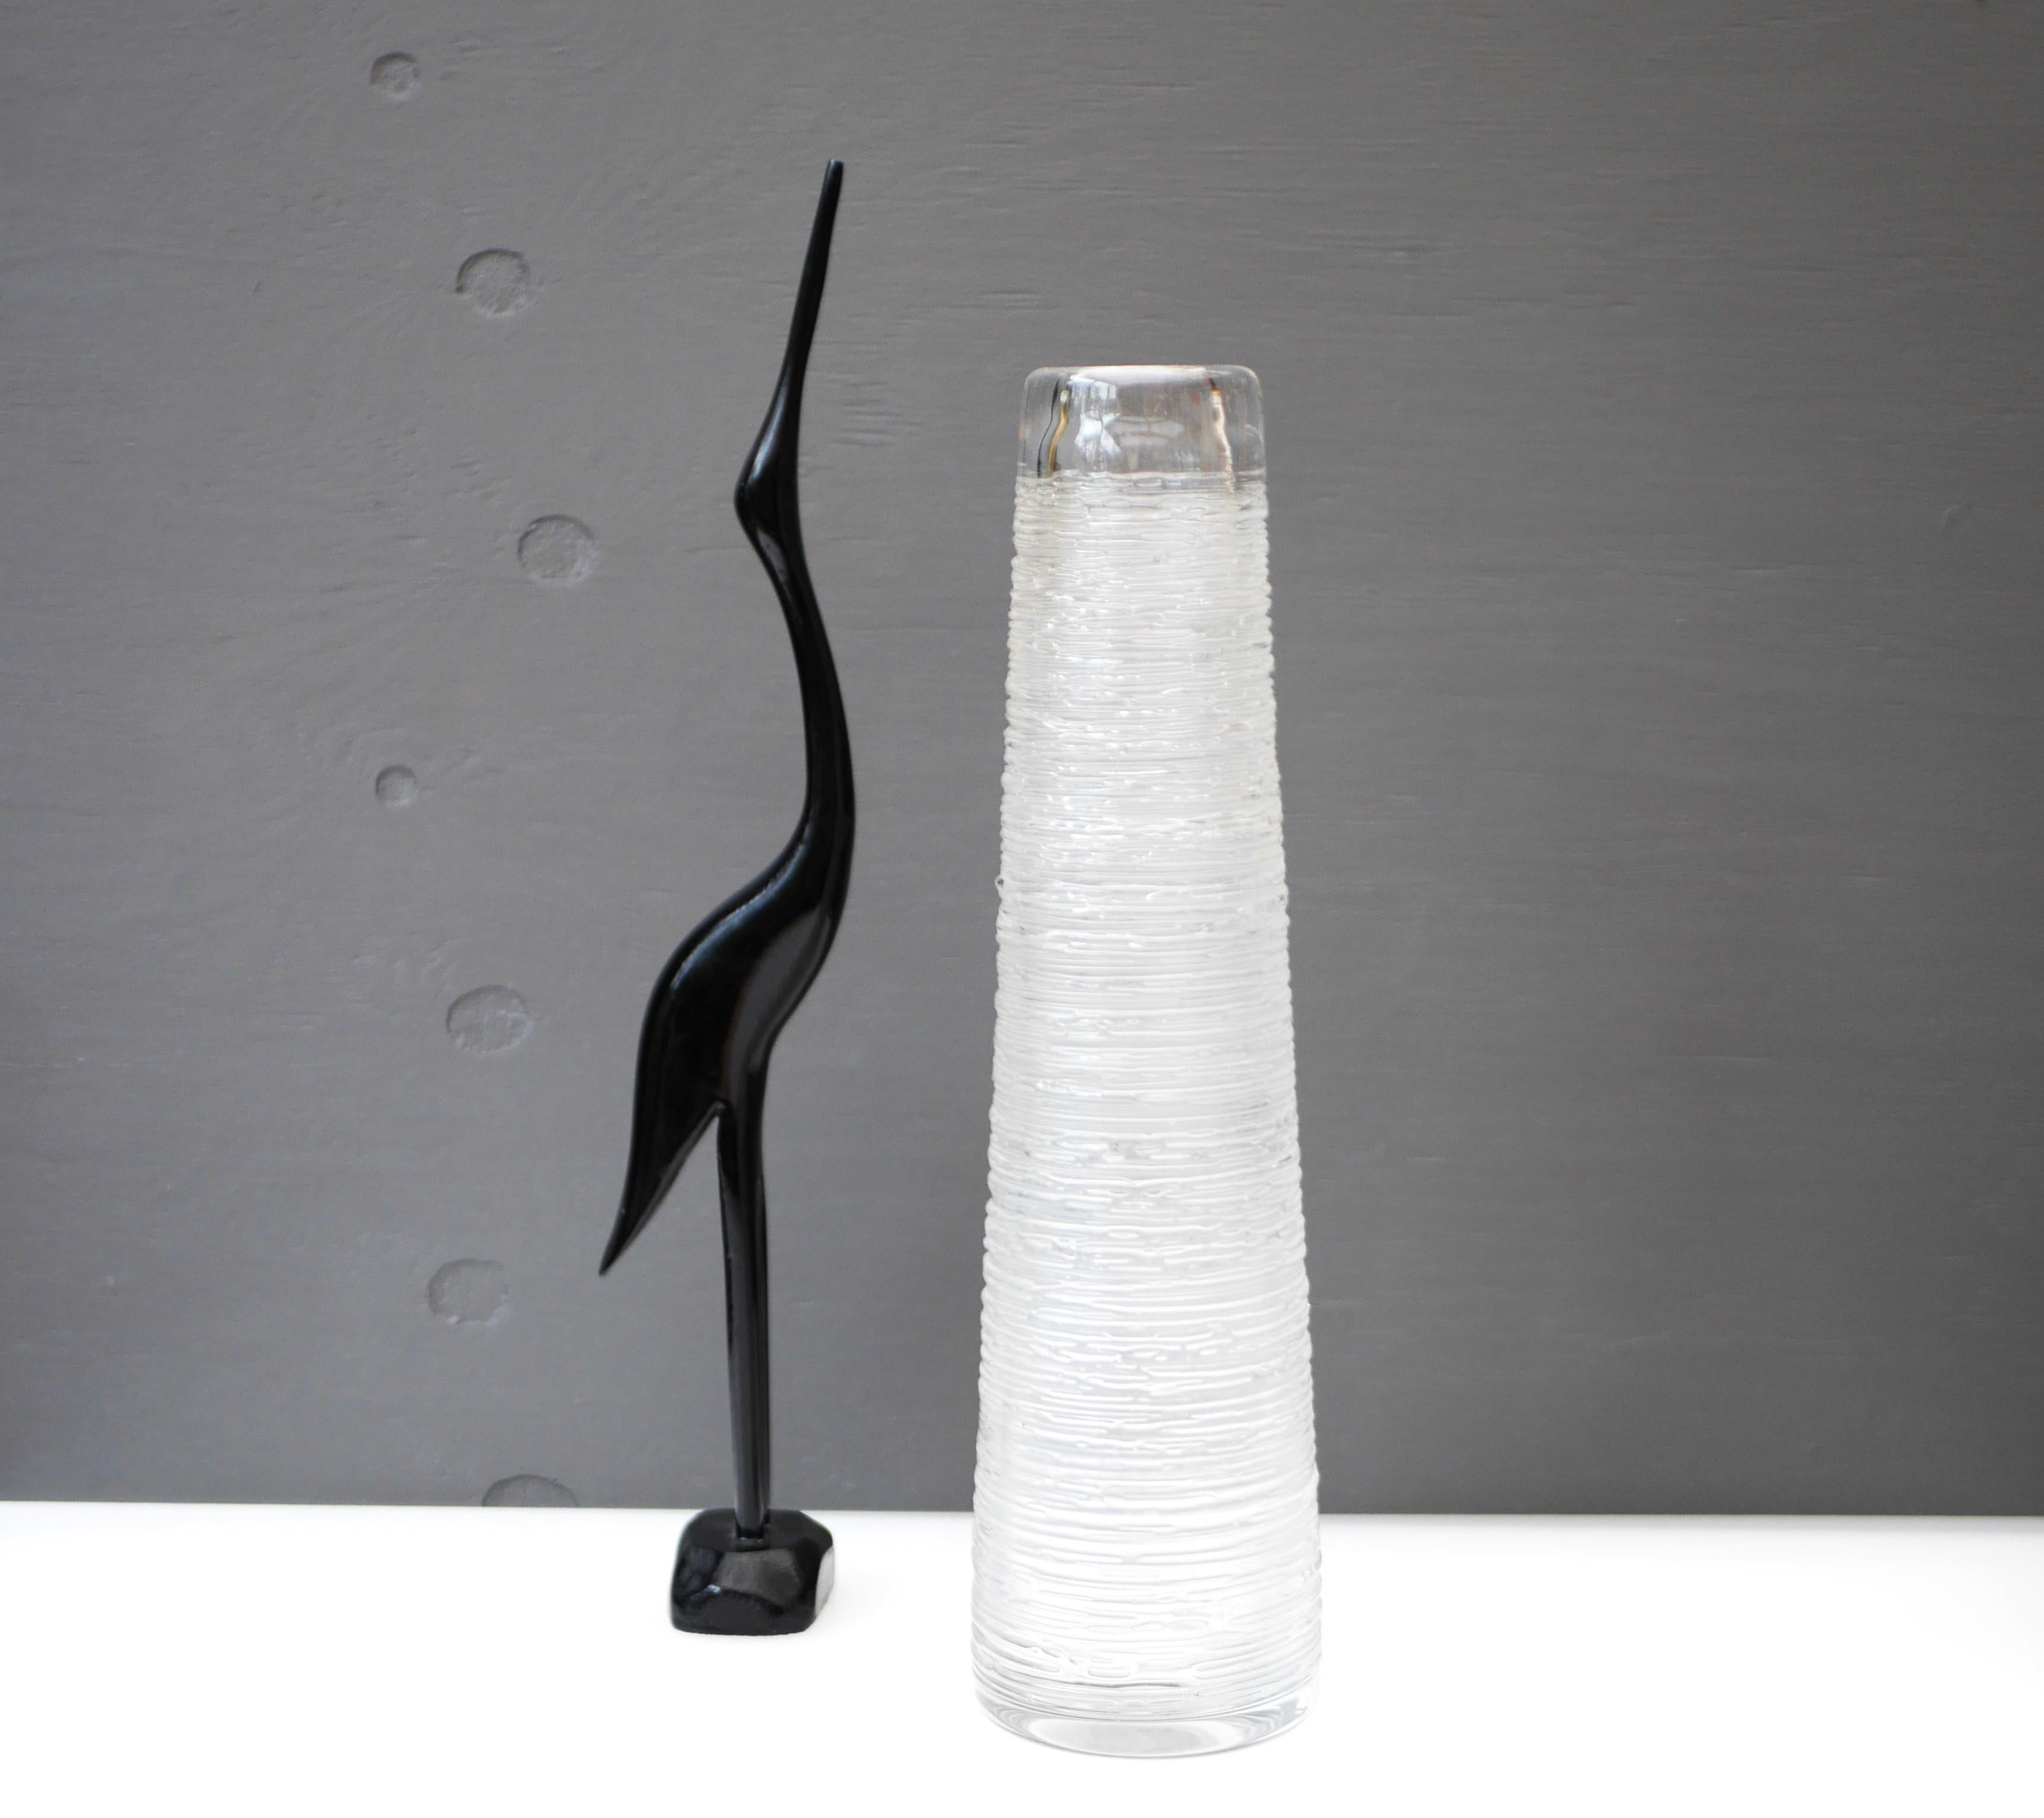 Eine große, beeindruckende Vase aus Klarglas von Bengt Edenfalk für die schwedische Glashütte Skruf, signiert. Aus der Vasen-Serie 'Spun'. 

Bengt Edenfalk (1924-2016) war ein schwedischer Glasdesigner, Maler, Grafiker und Bildhauer, der auch an